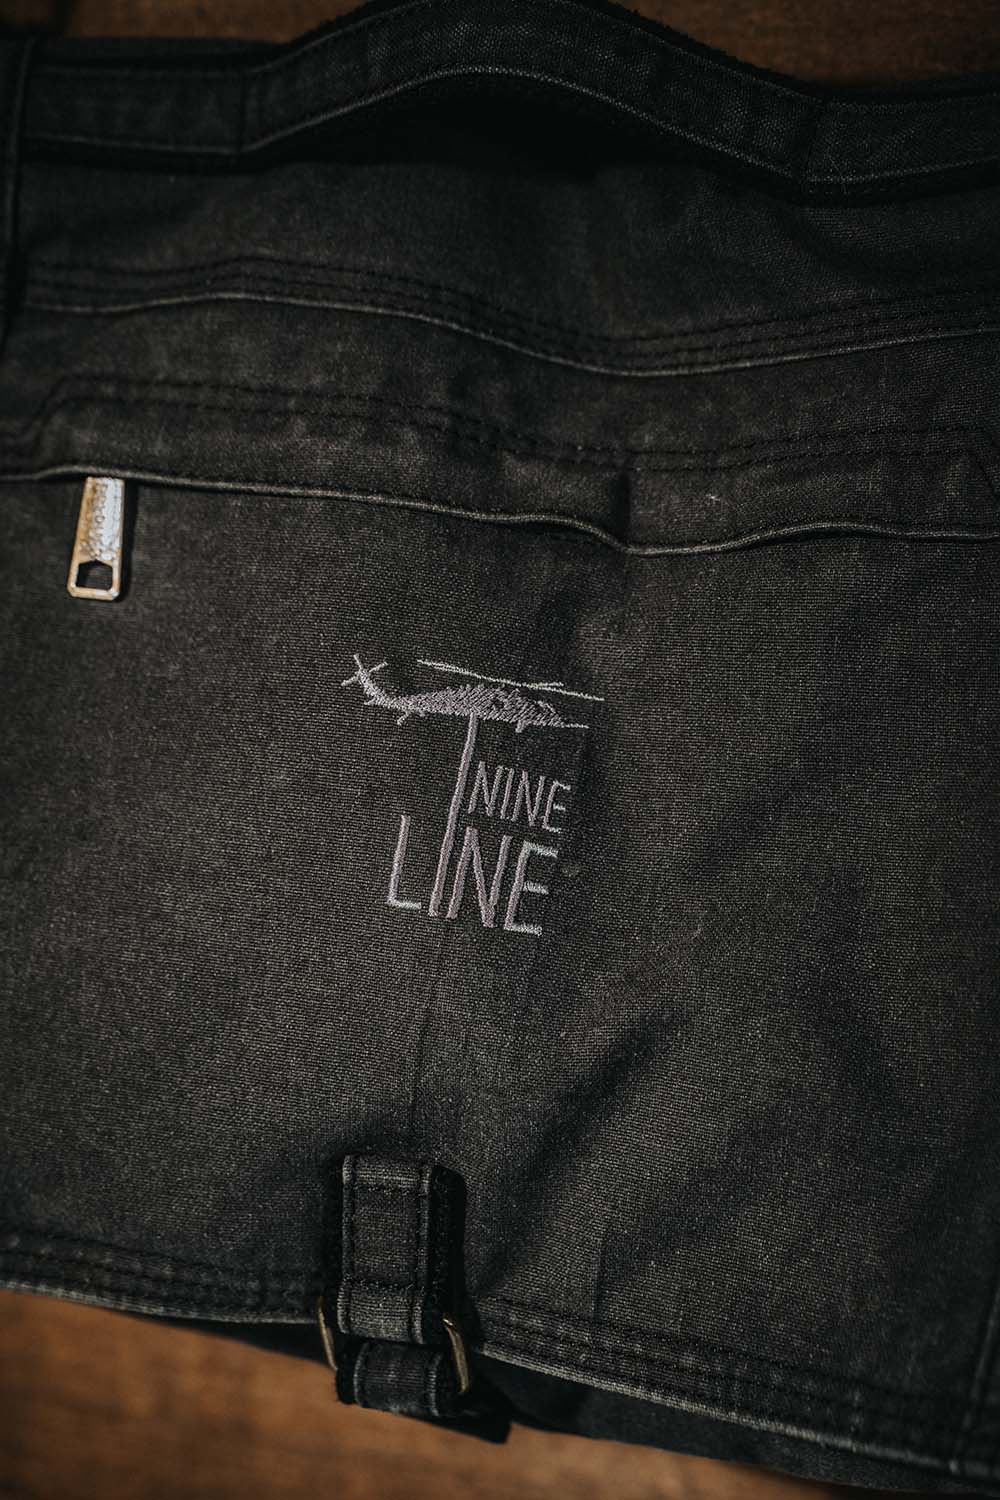 Nine Line Messenger Bag Collection - Nine Line Apparel